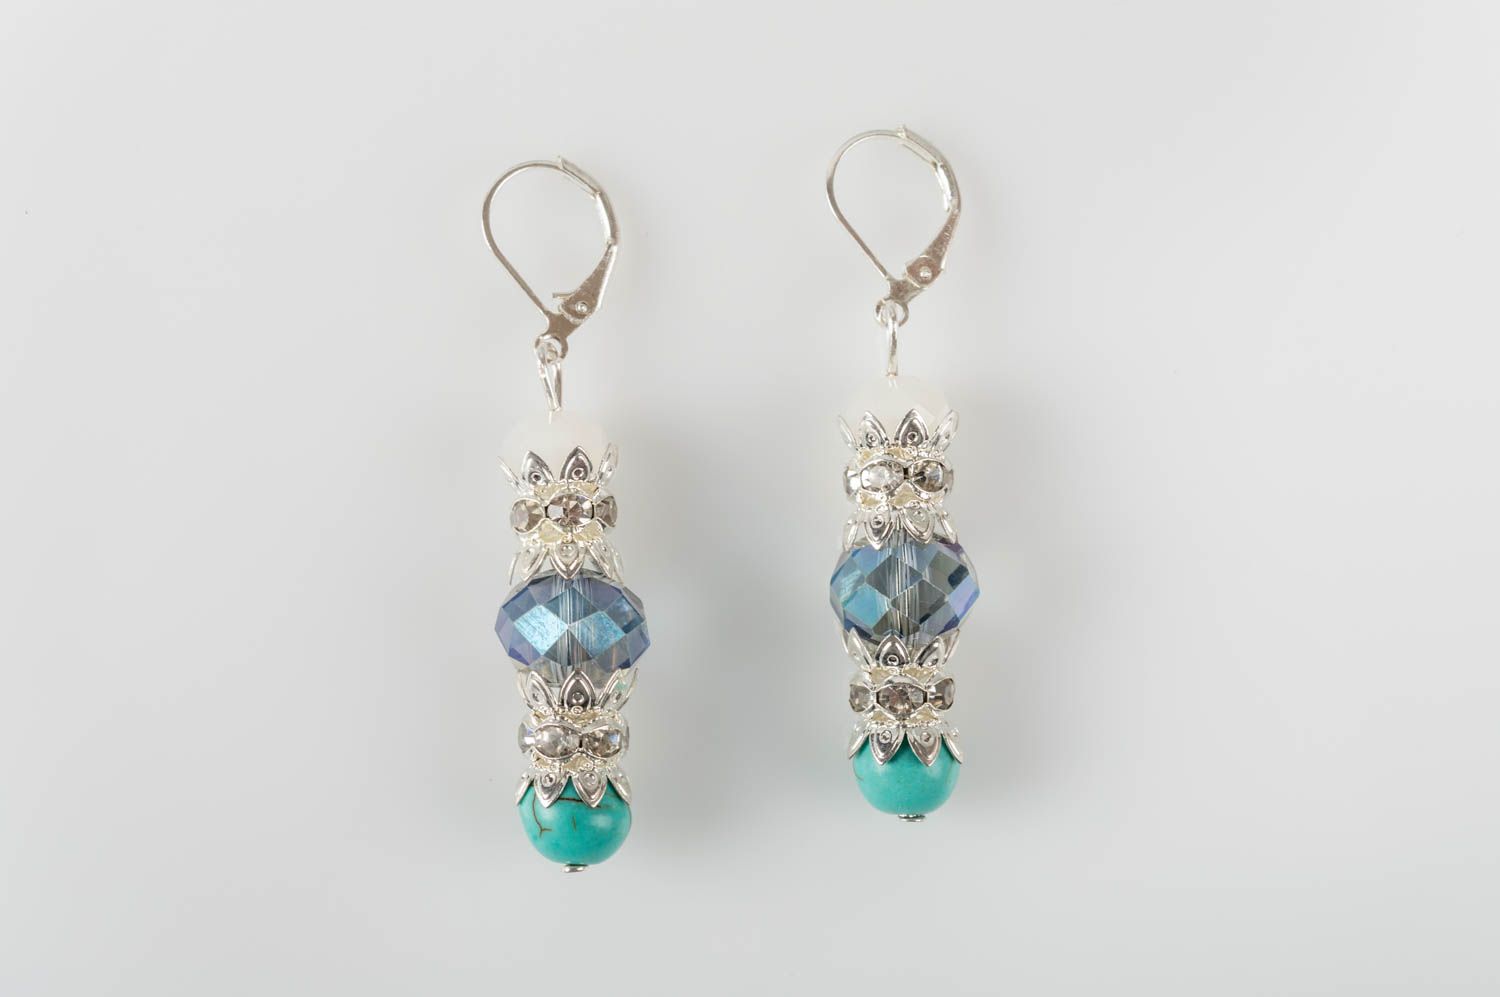 Small handmade gemstone earrings designer crystal earrings gifts for her photo 2